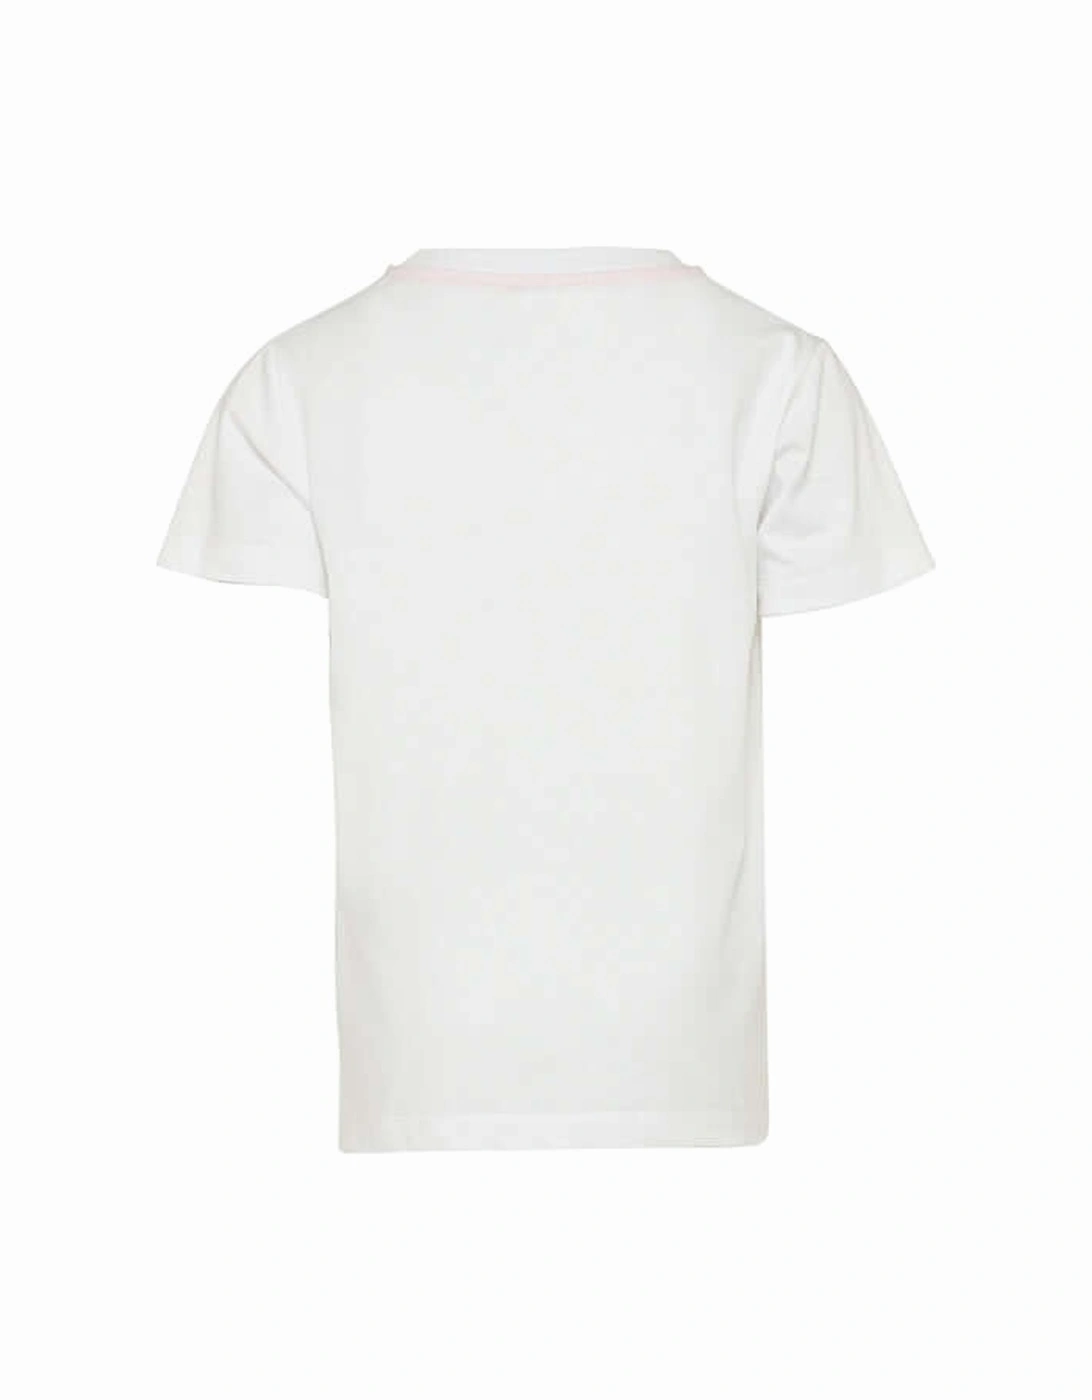 Boys White Cotton Colourful Logo T-Shirt